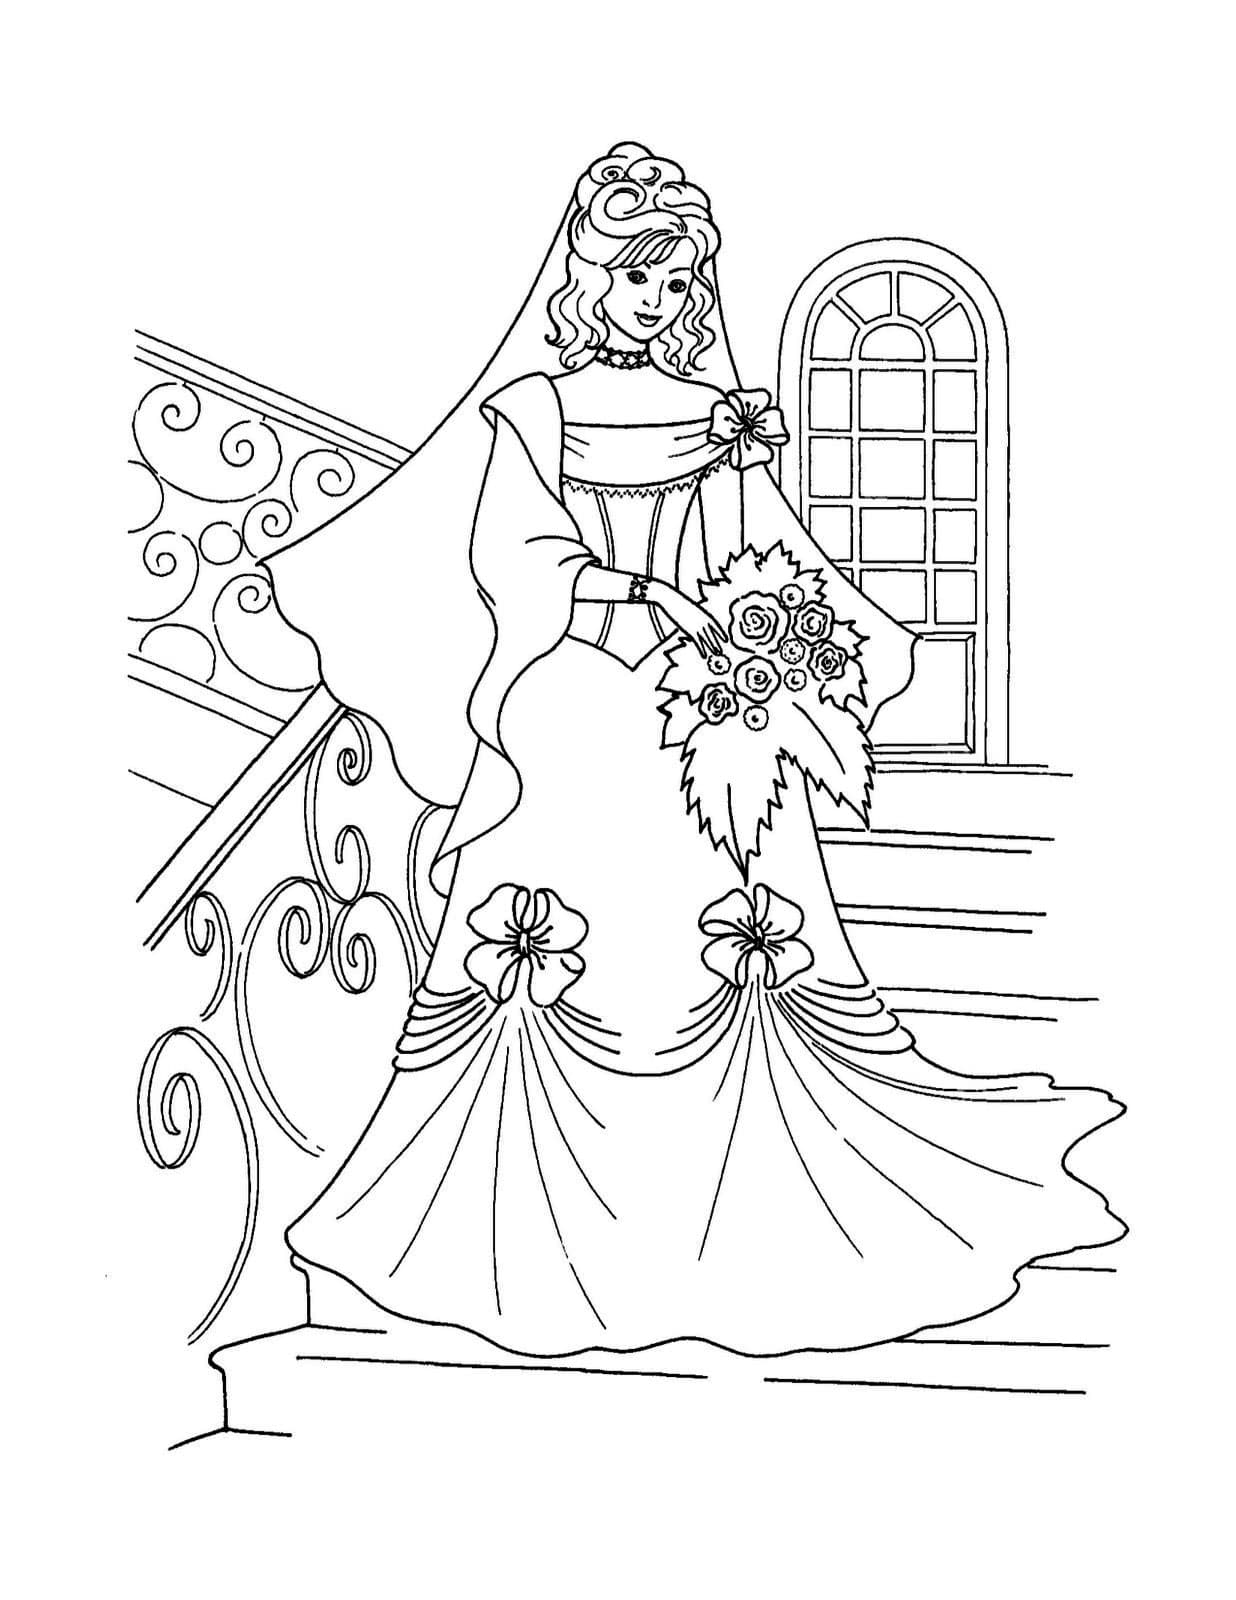 Раскраска жених и невеста. Раскраска 4